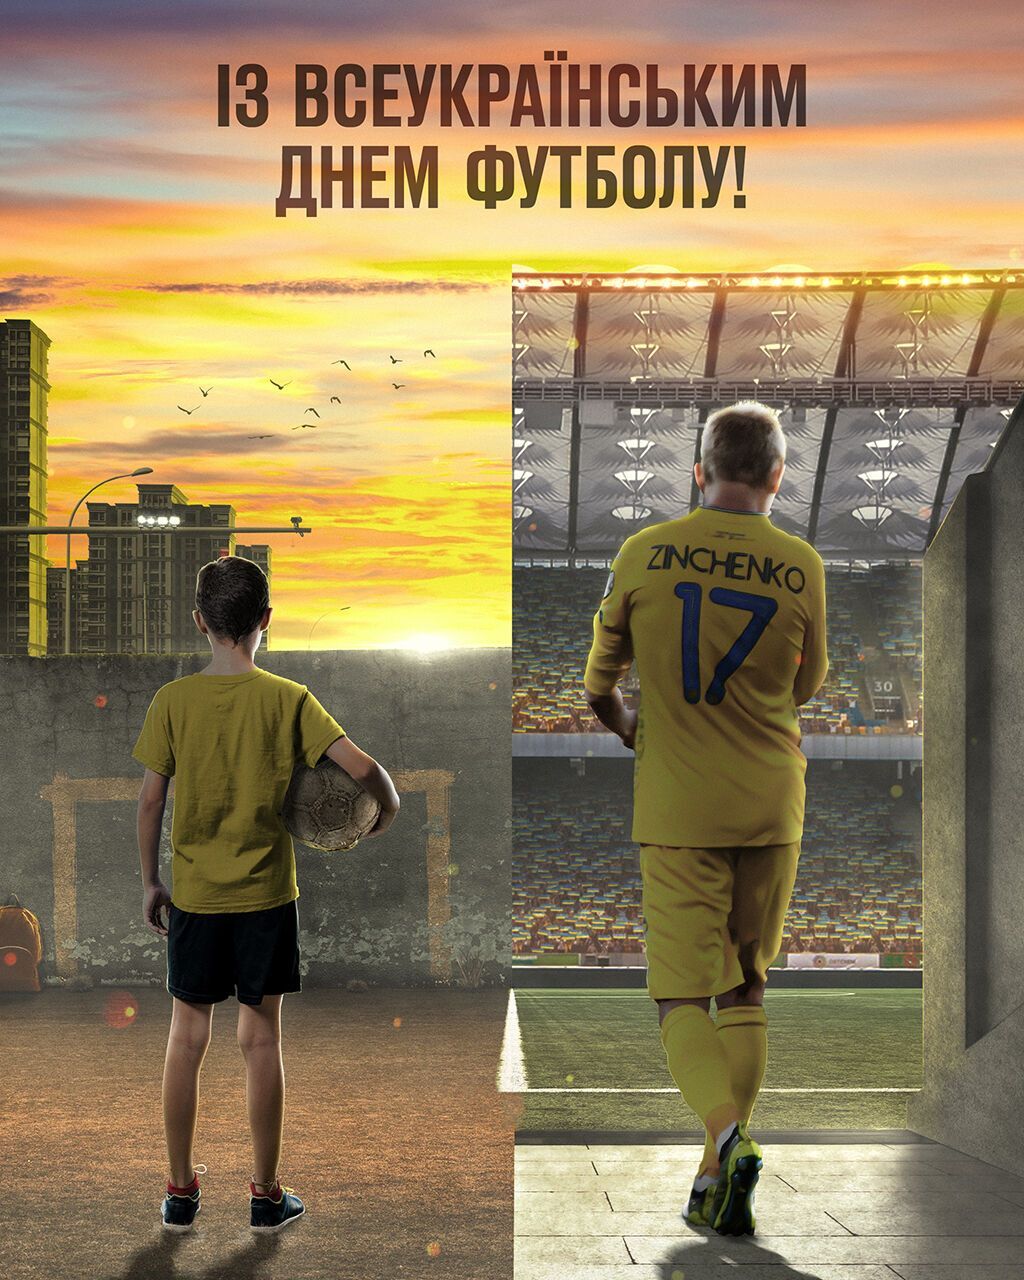 Всеукраїнський день футболу